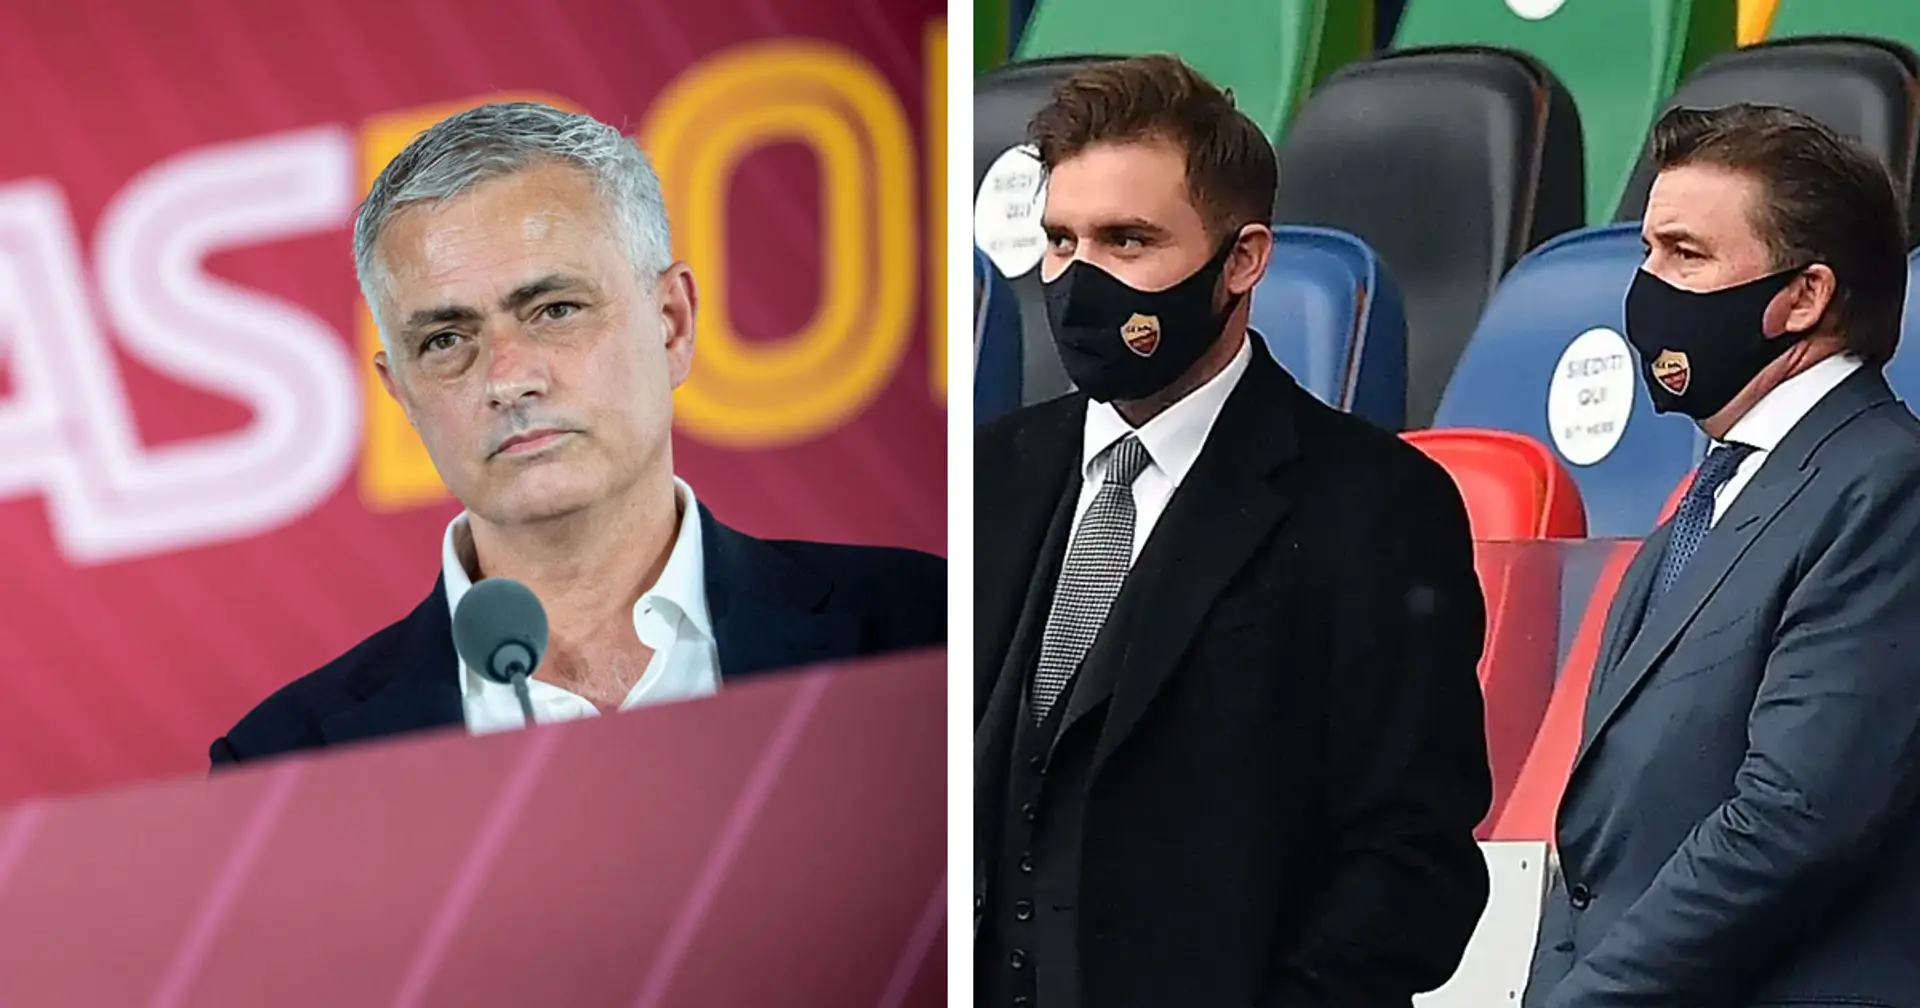 La Roma dei Friedkin targata Mourinho sogna in grande: 3 mosse specifiche per rilanciare i Giallorossi